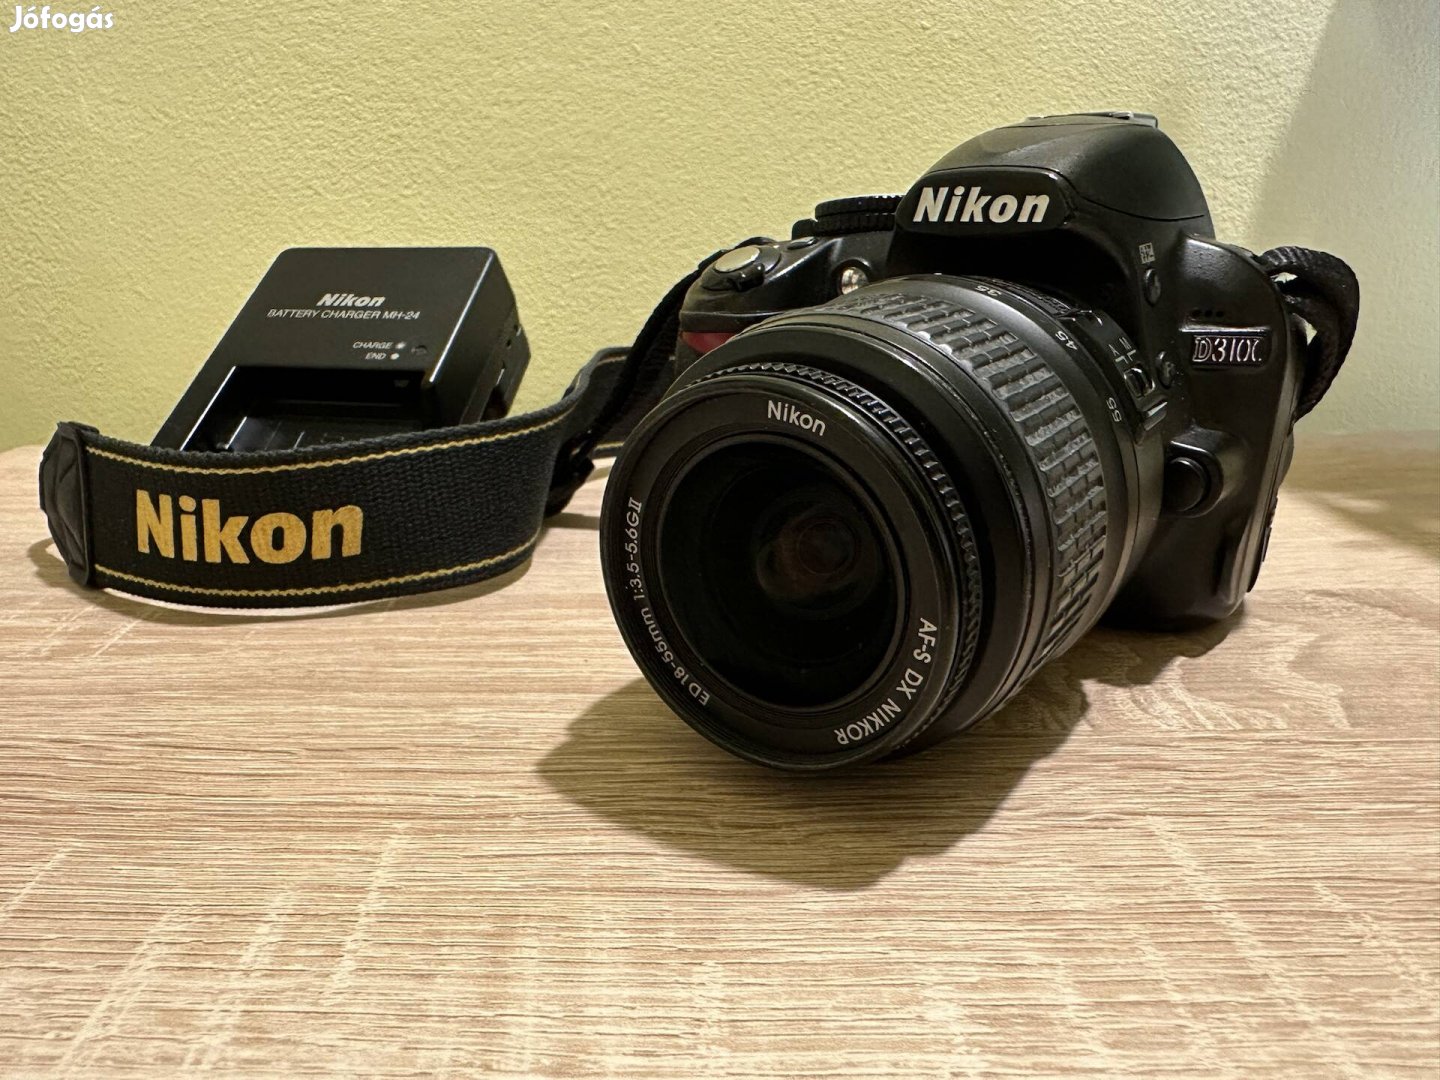 Nikon D3100 dslr fényképezőgép 18-55mm objektívvel